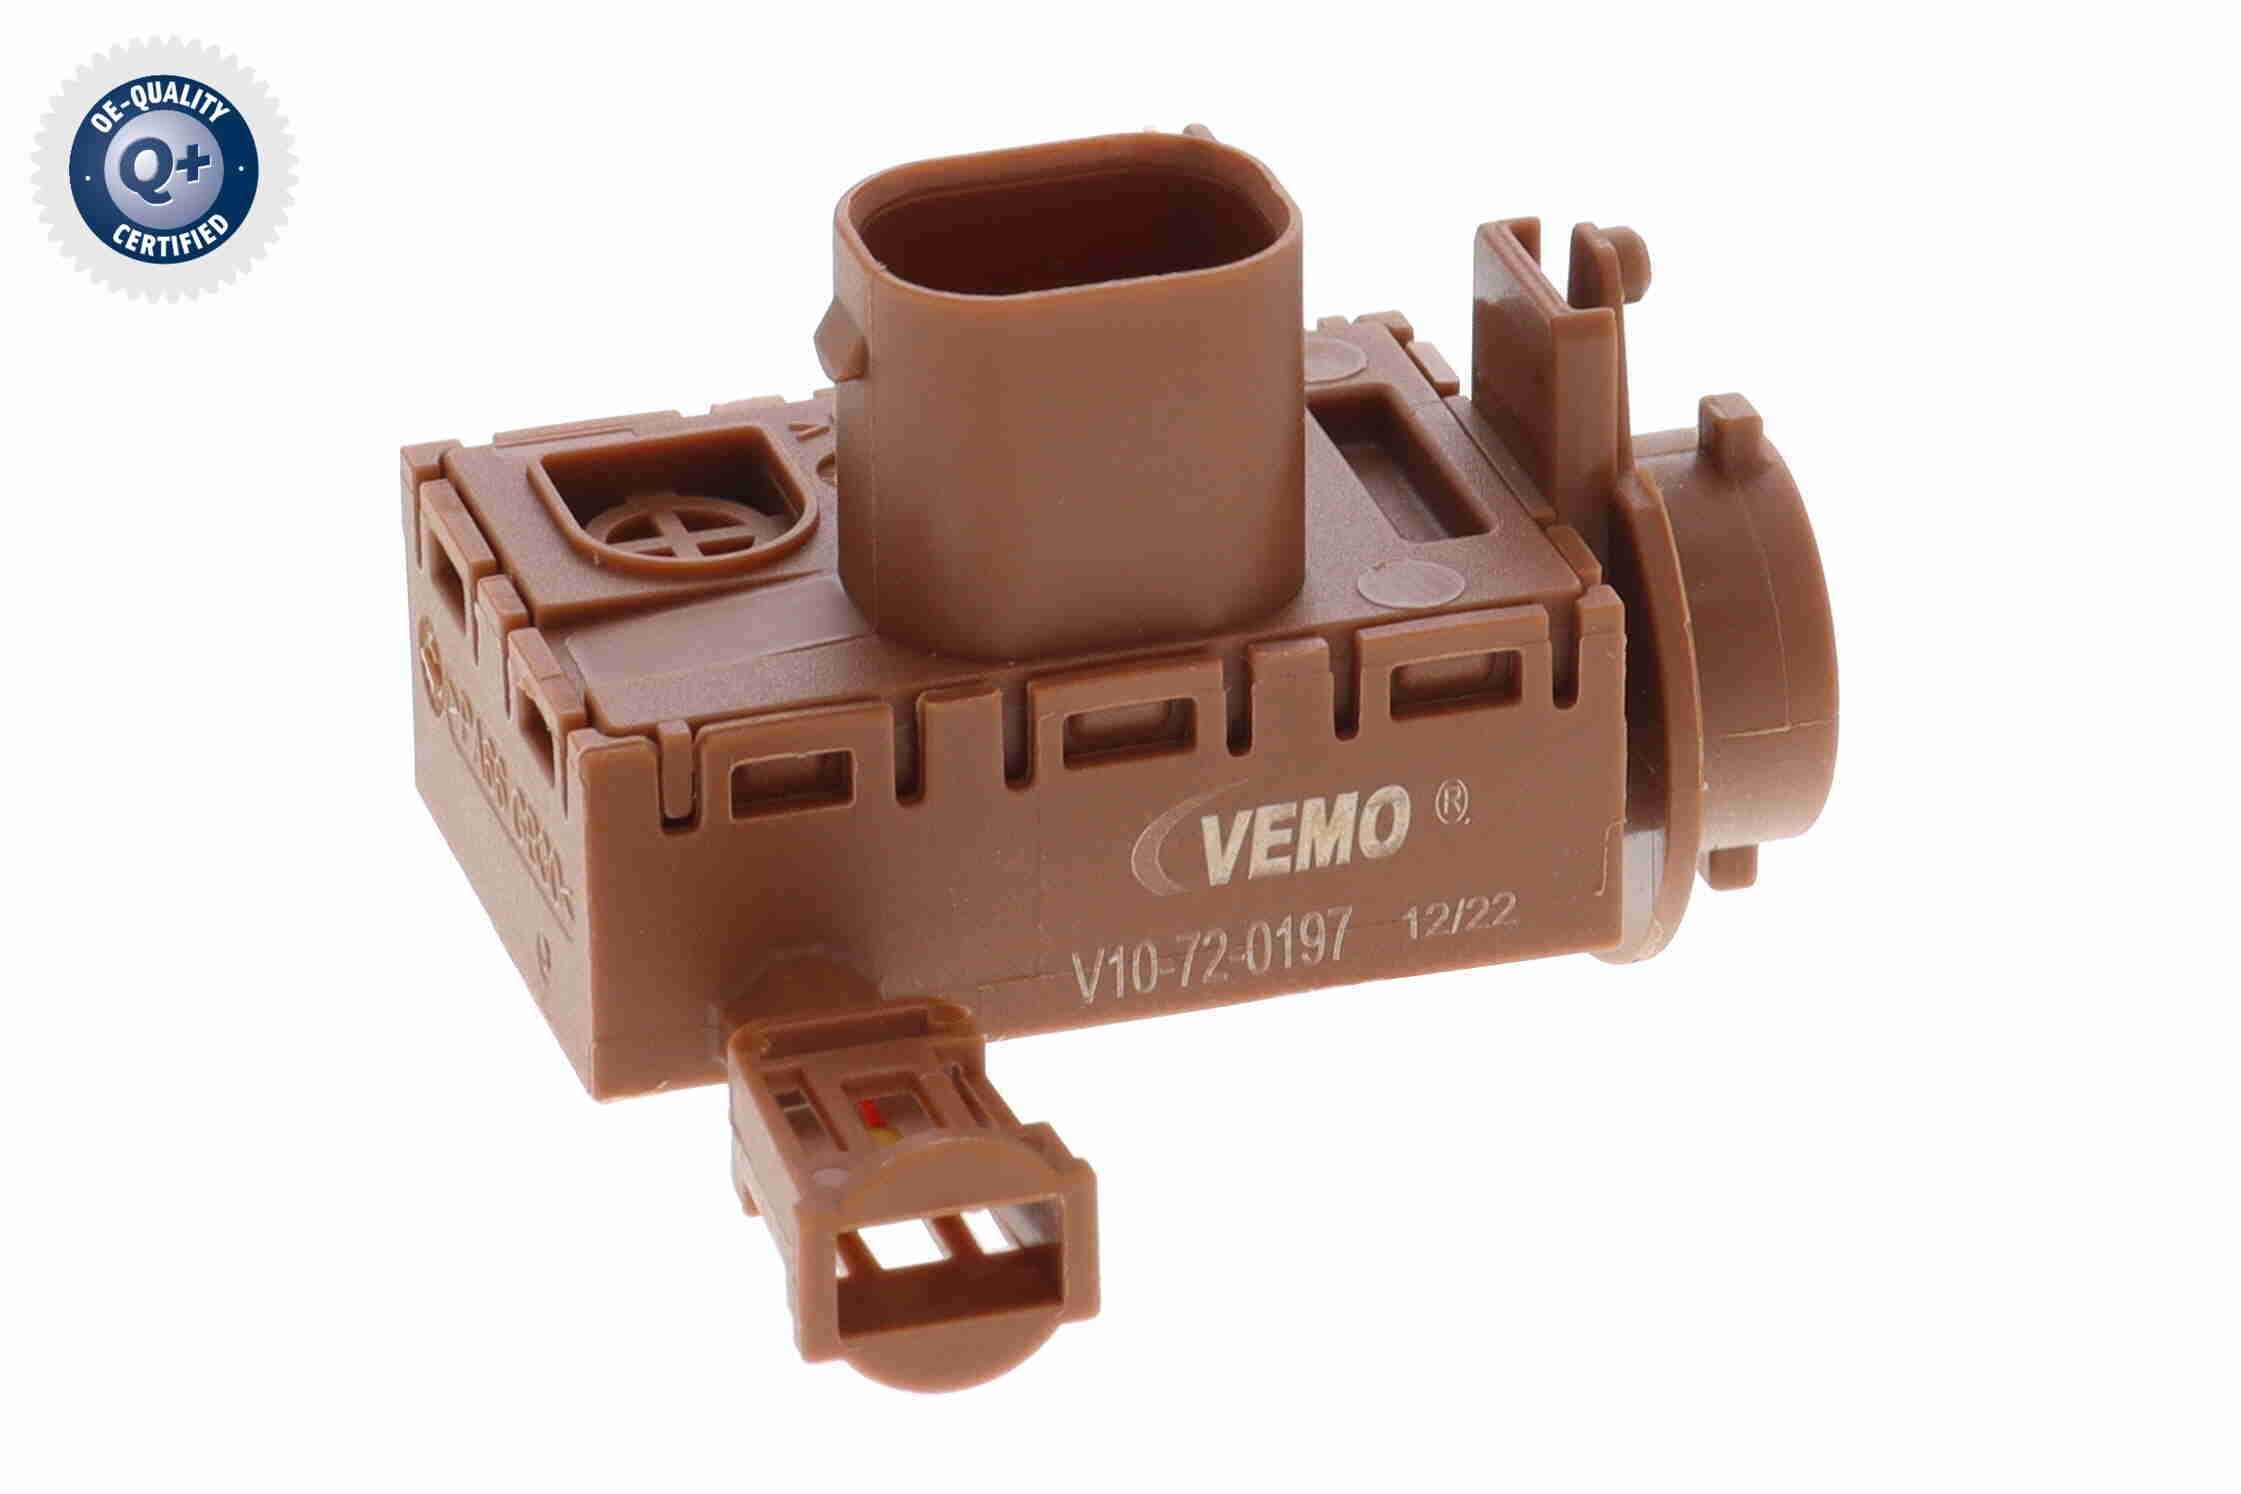 Original V10-72-0197 VEMO Air quality sensor experience and price